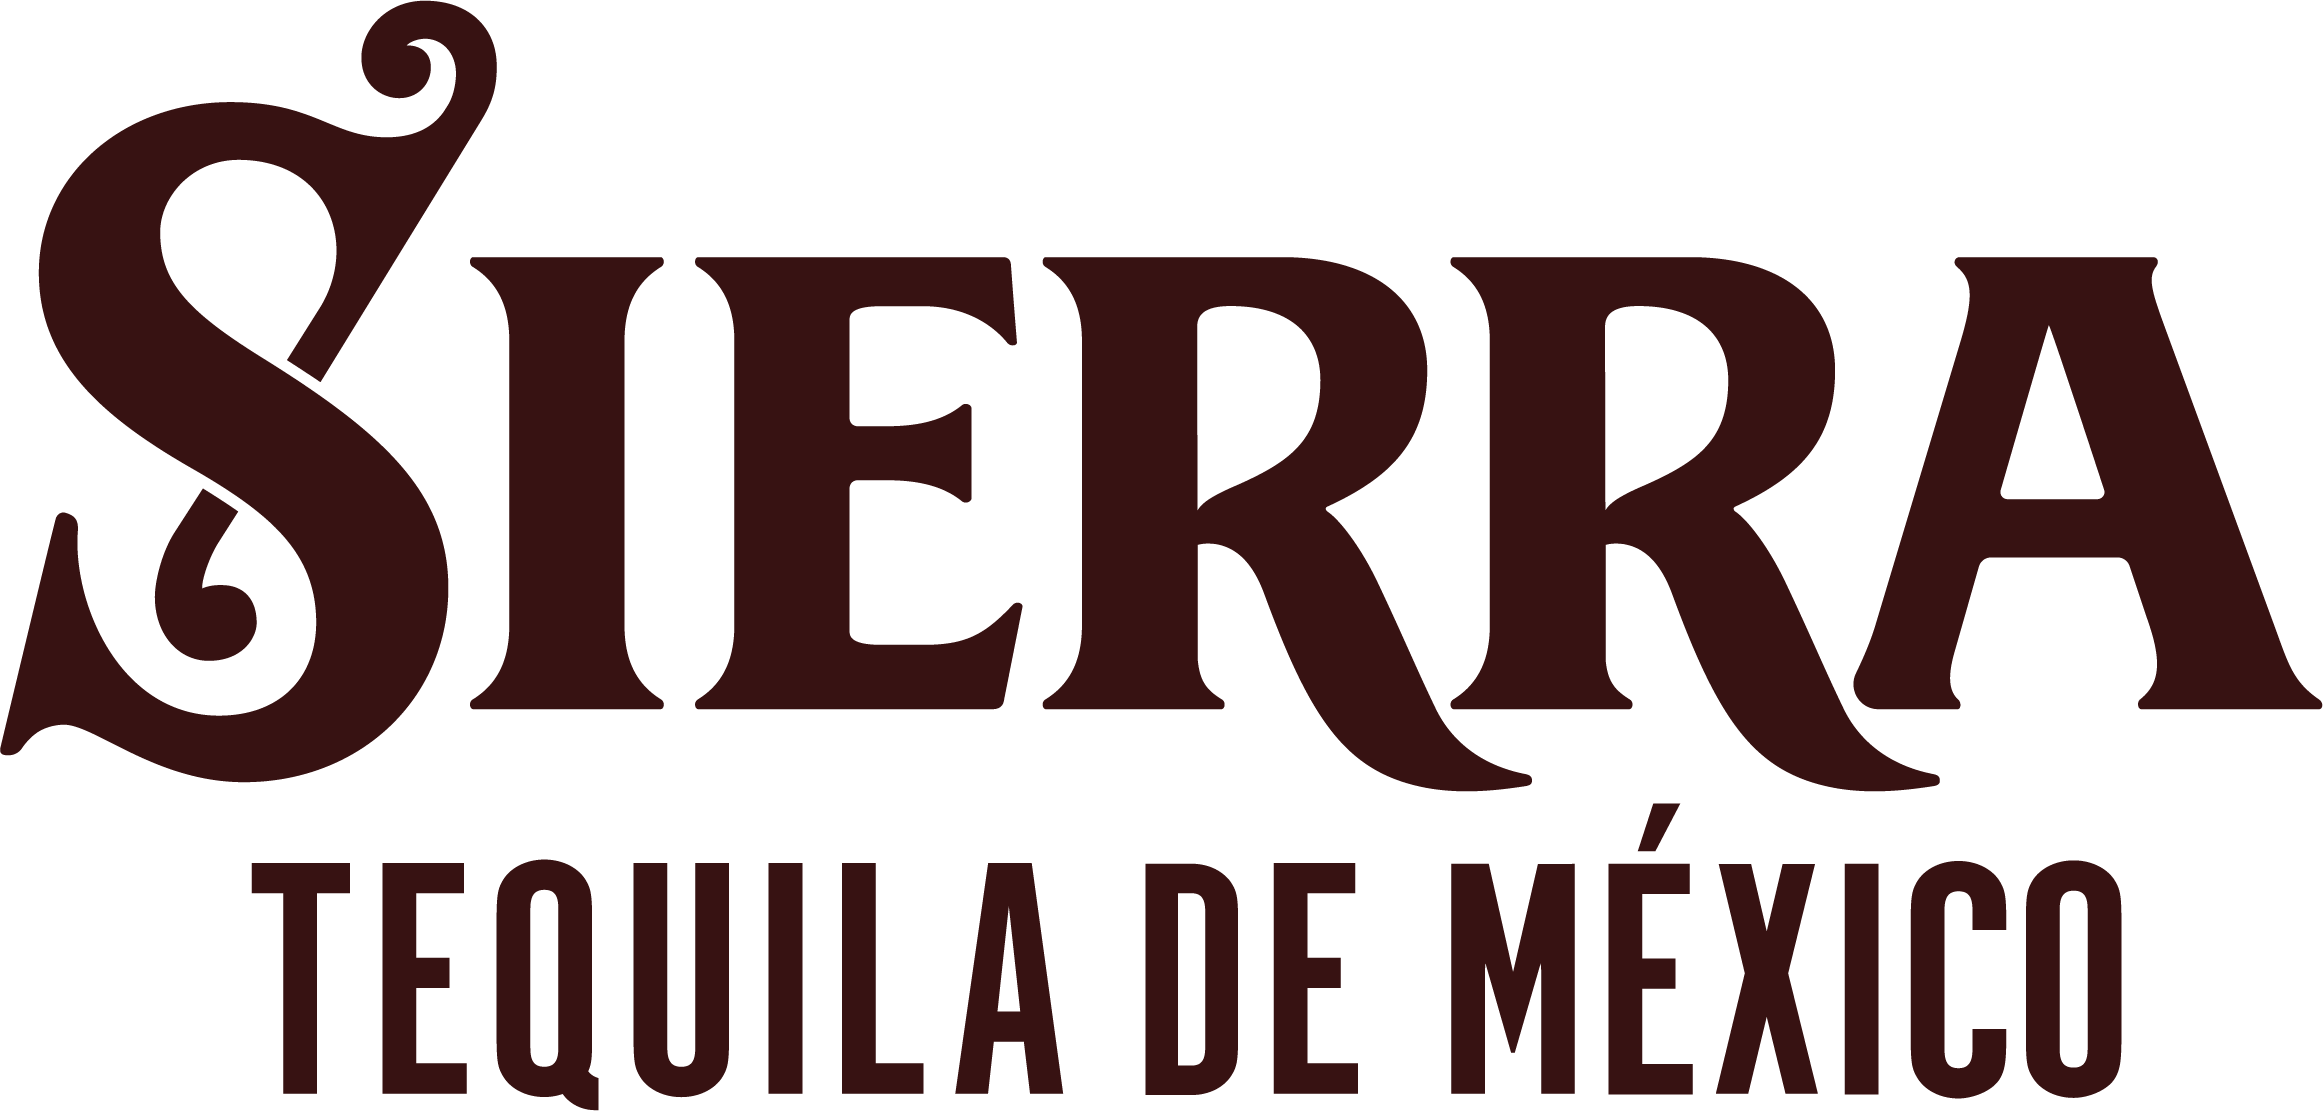 Sierra Tequilla